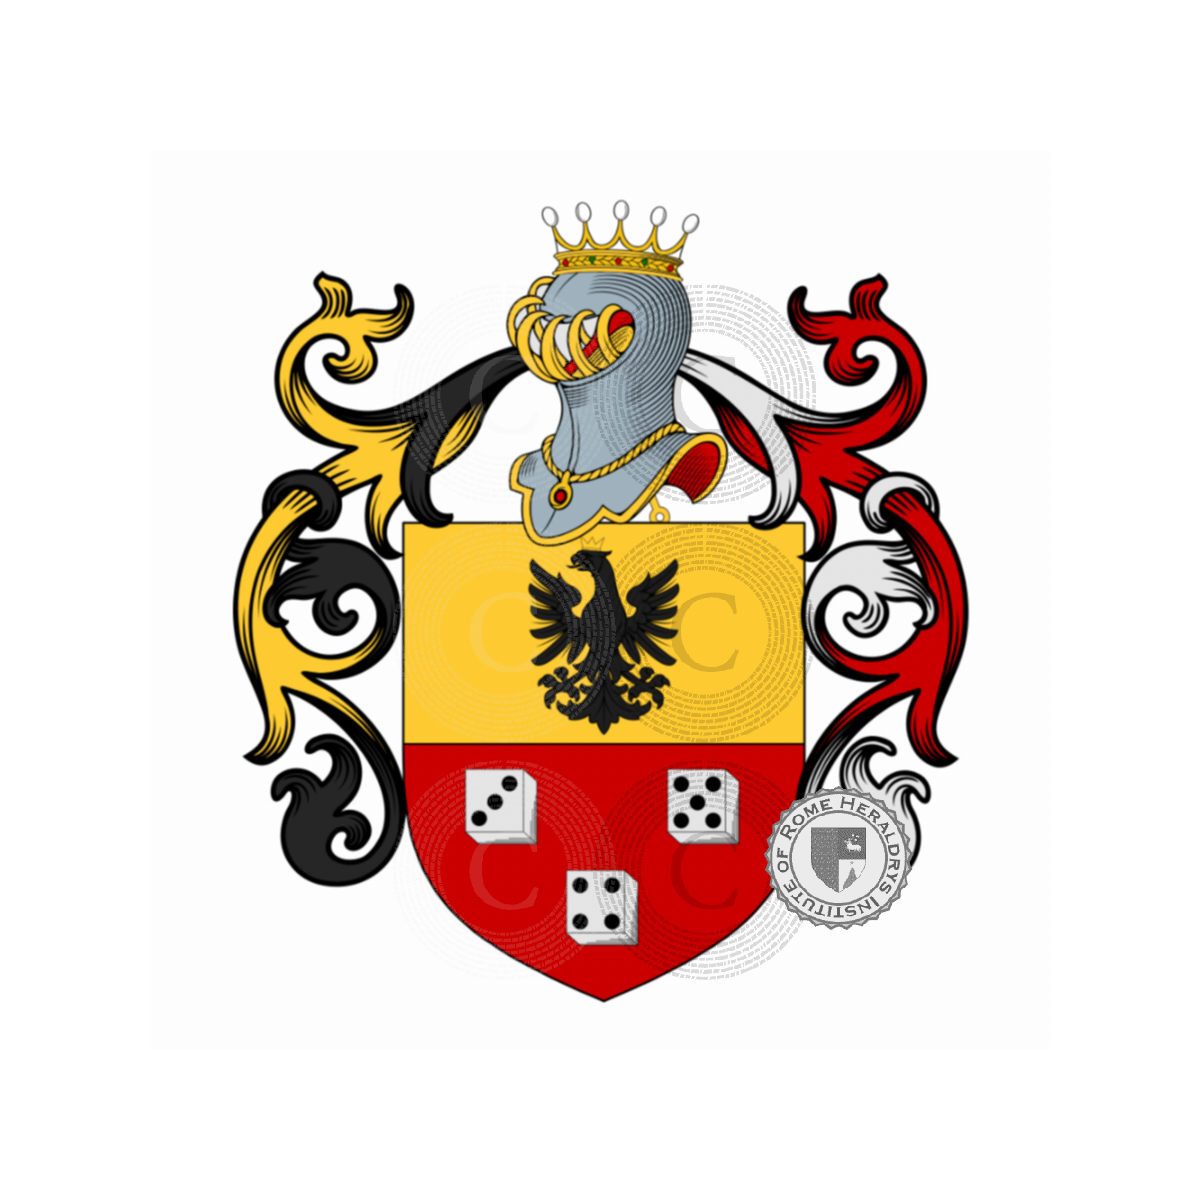 Wappen der FamilieQuadrio, della Quadra,Quadrio